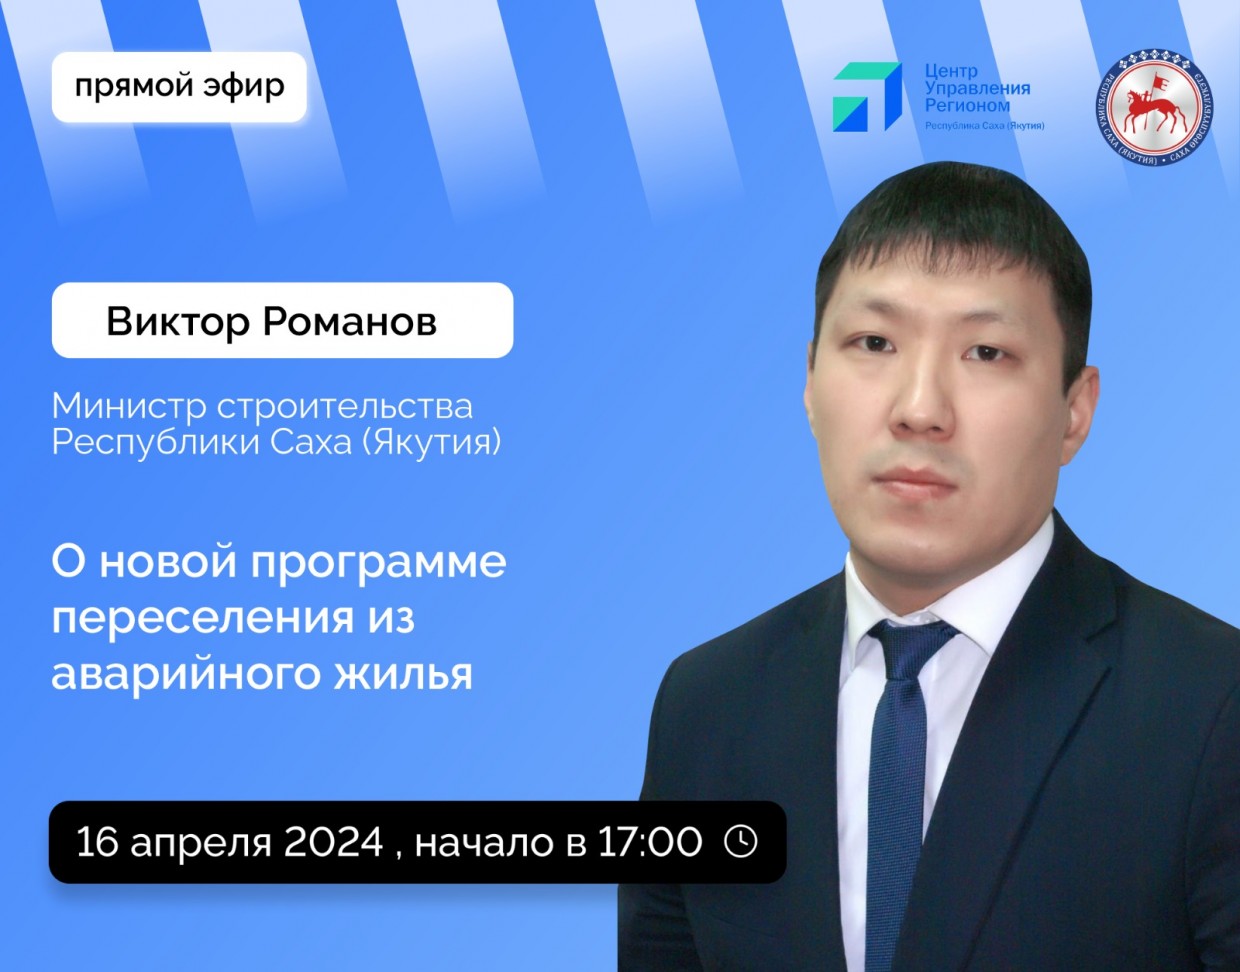 Министр строительства Якутии Виктор Романов проведет прямой эфир в соцсетях